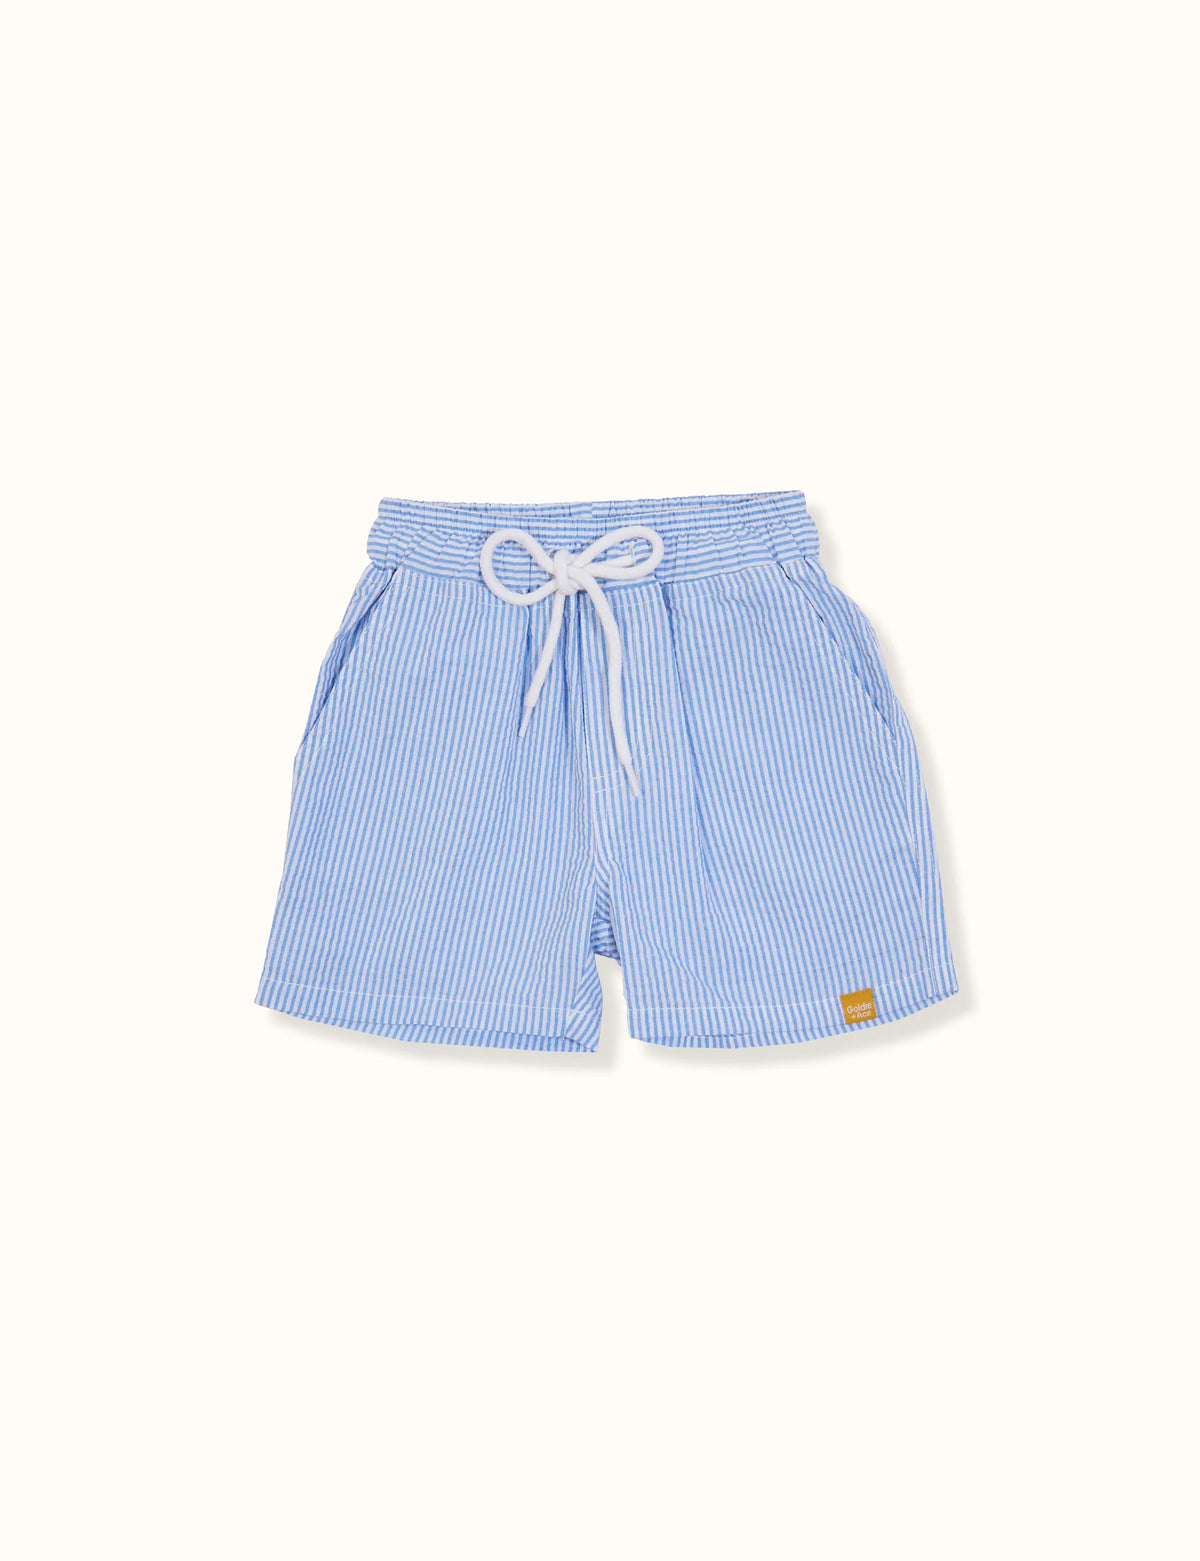 Seersucker Cotton Board Shorts - Blue Stripe - Child Boutique